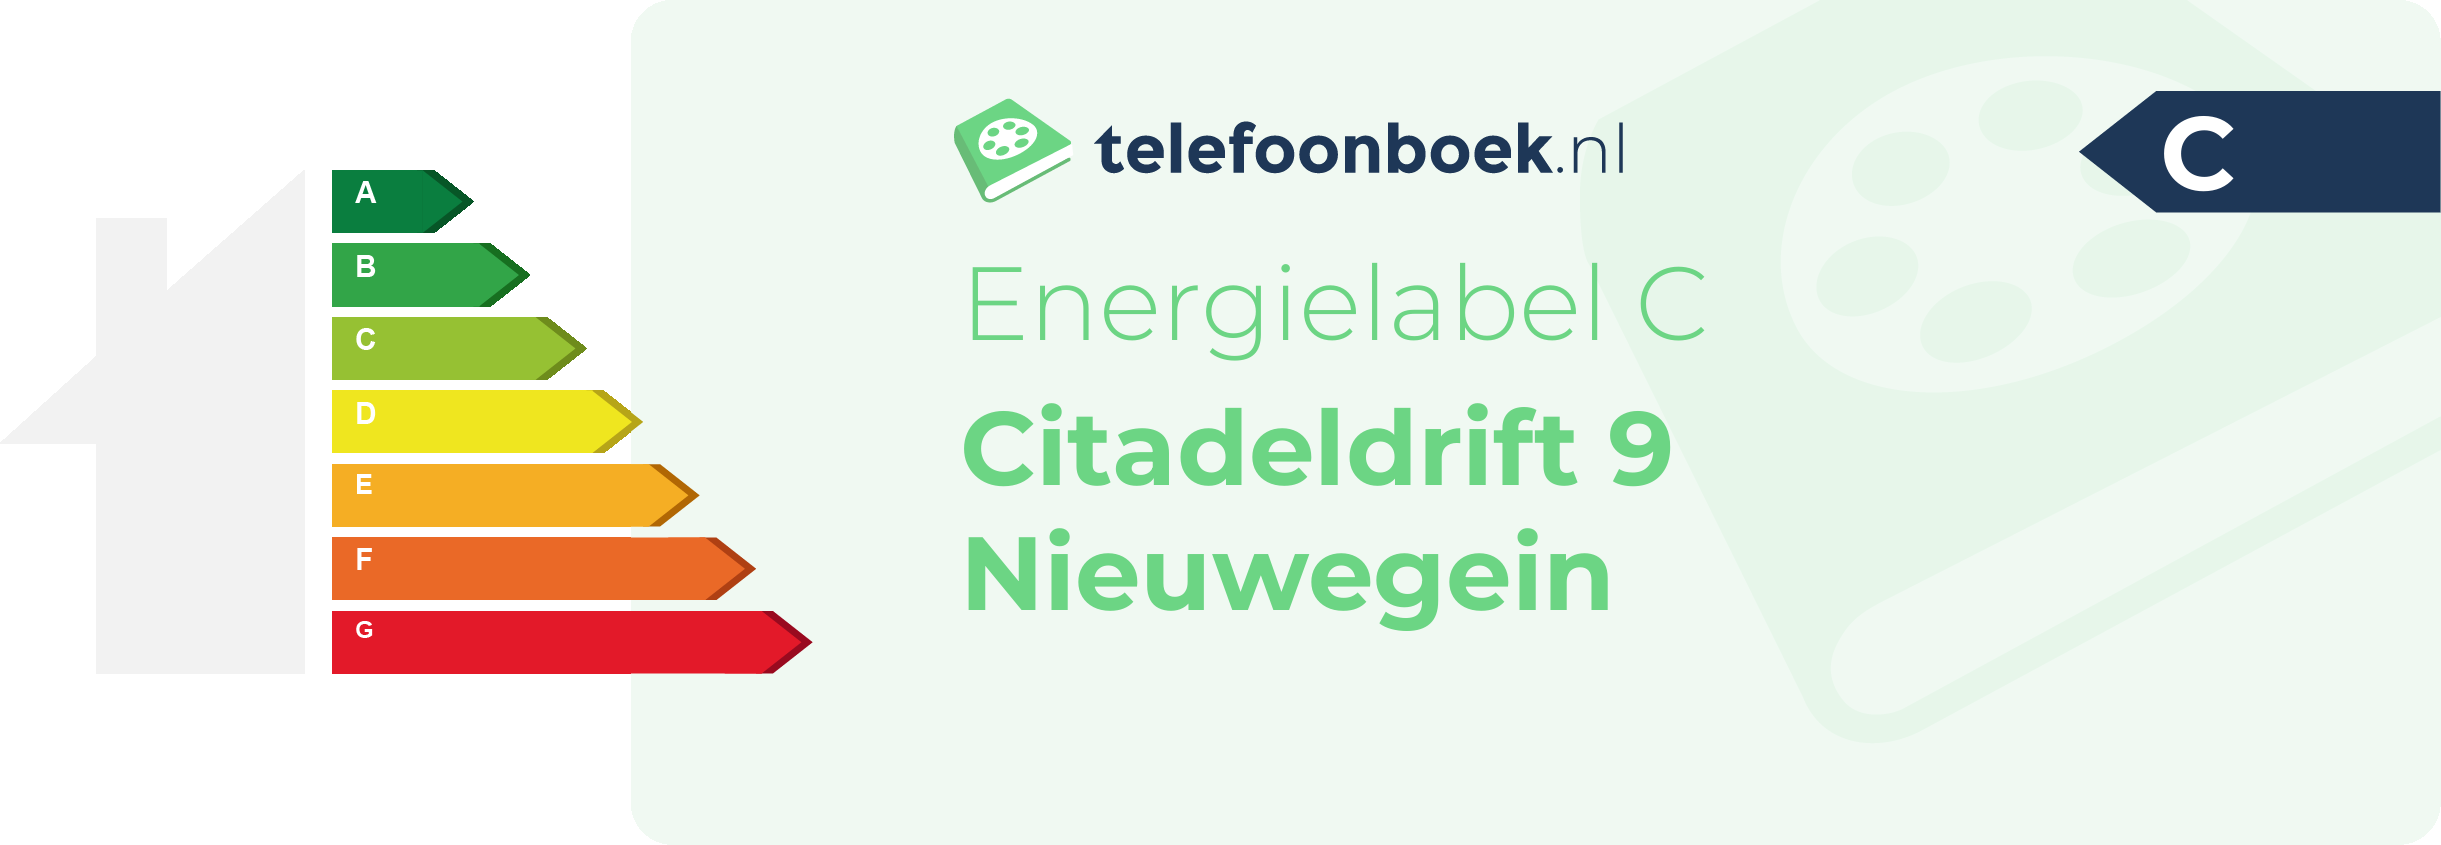 Energielabel Citadeldrift 9 Nieuwegein